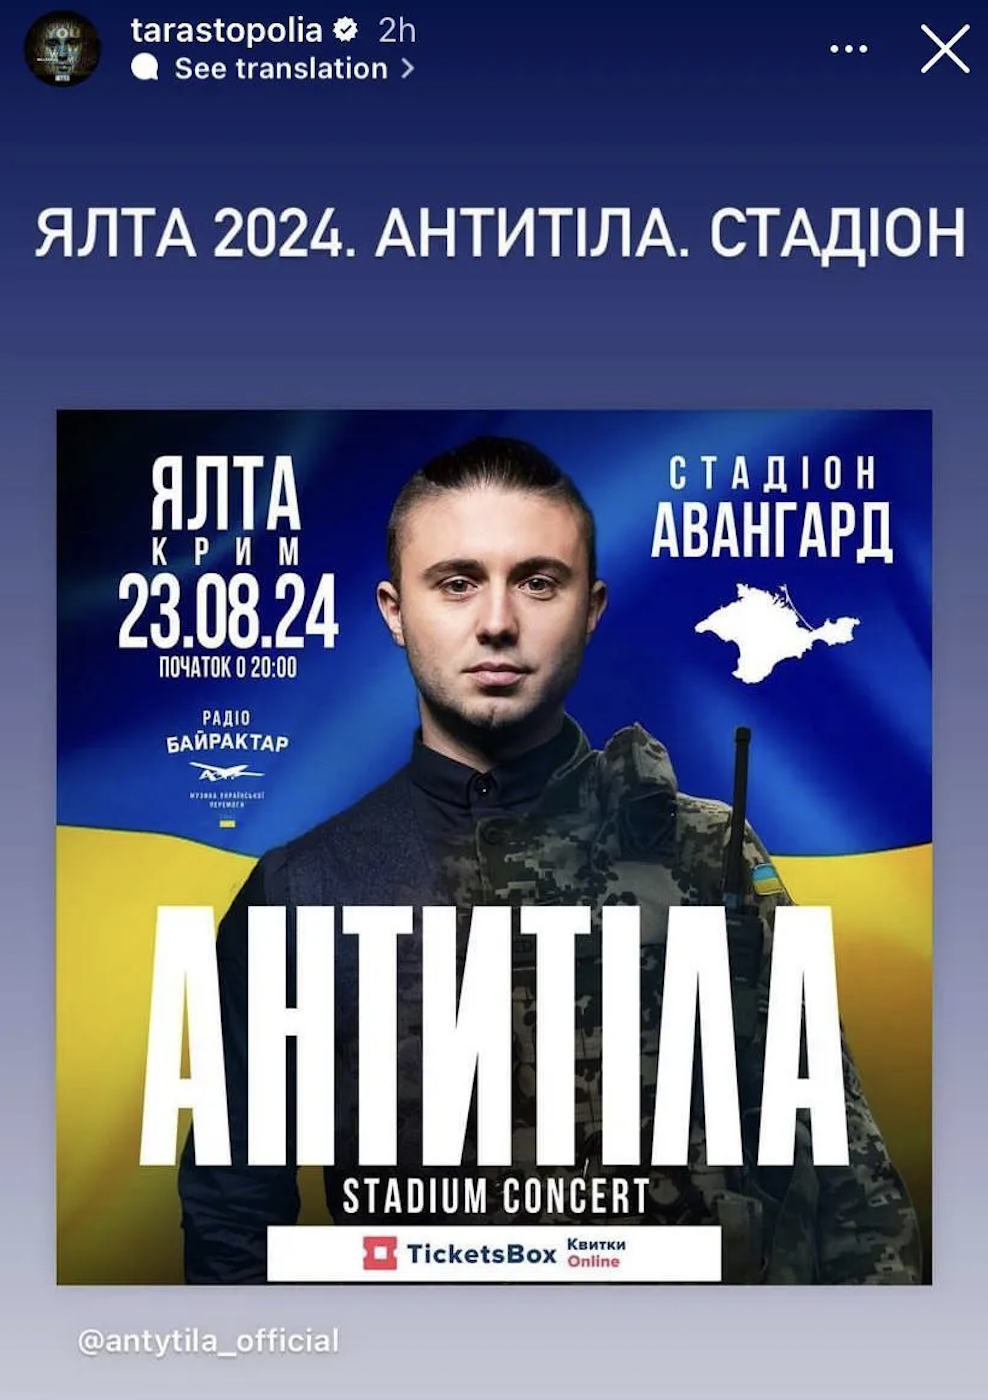 Тарас Тополя объяснил анонс концерта "Антитіл" в Крыму 23 августа 2024 года: Киев должен был пасть через неделю. Этого же не произошло, это магия